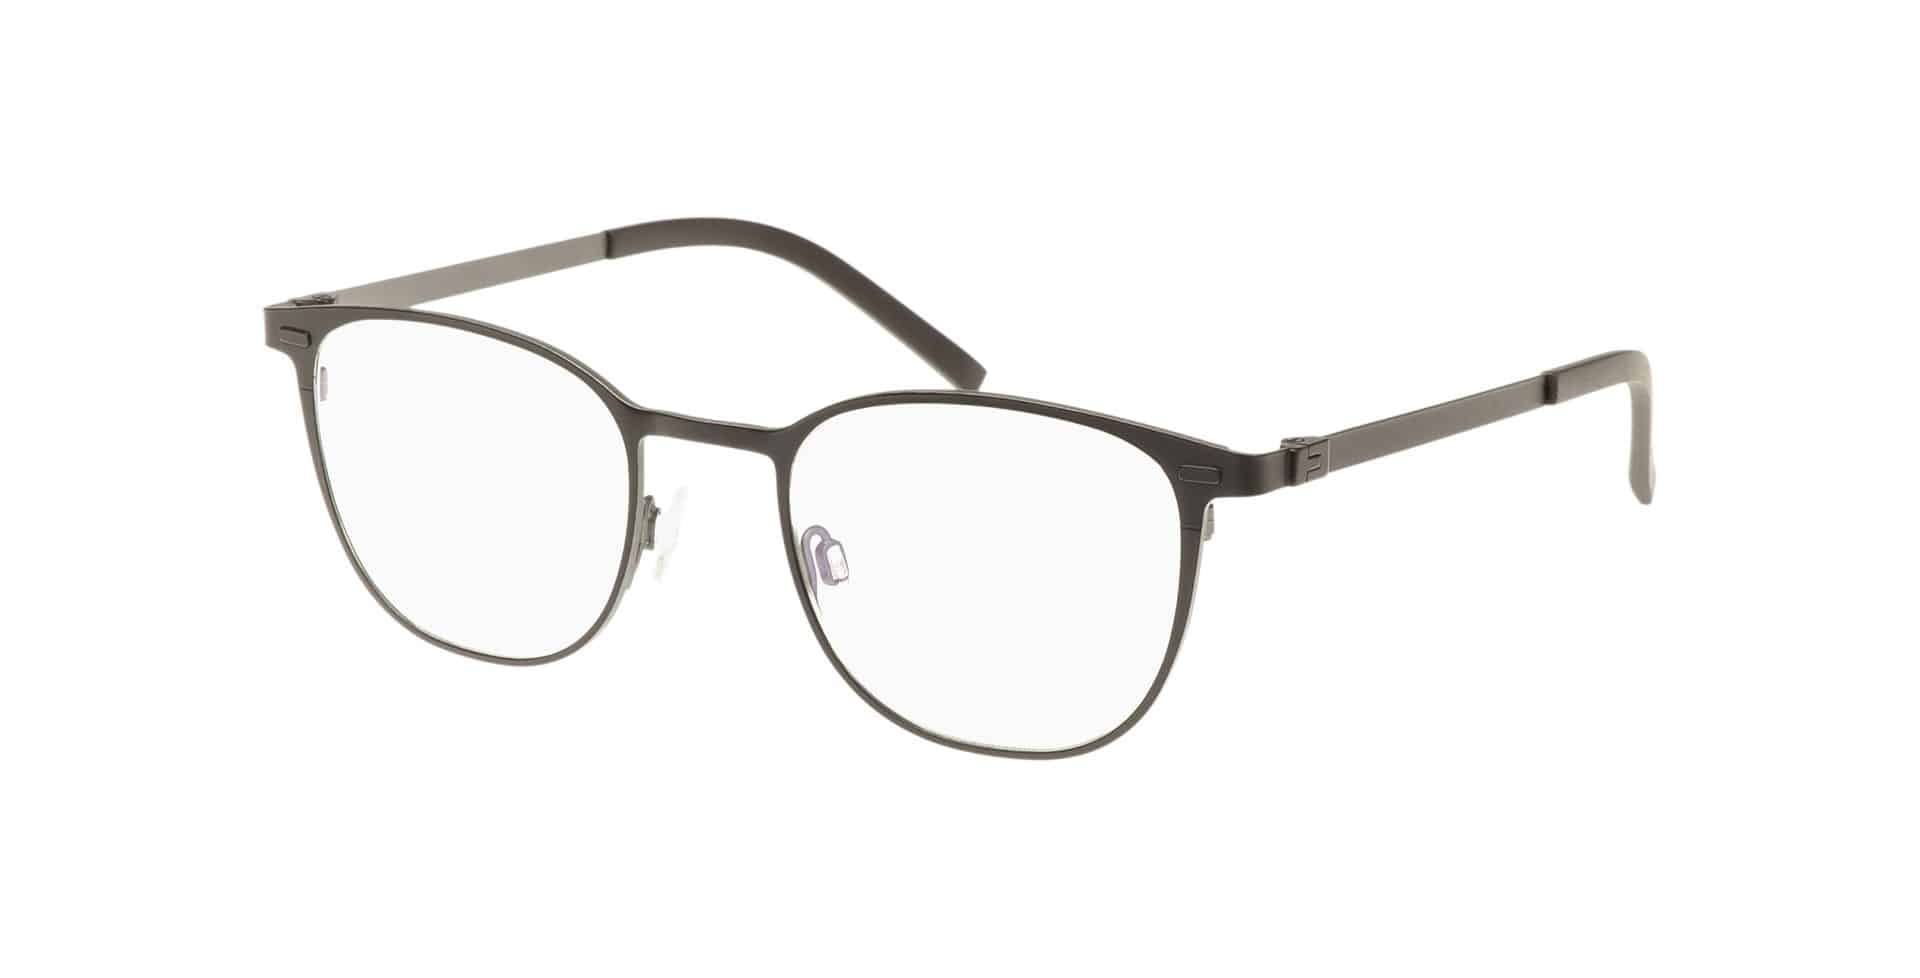 Brillen für schmale Gesichter PARVUM Modell 3306 Farbe 001